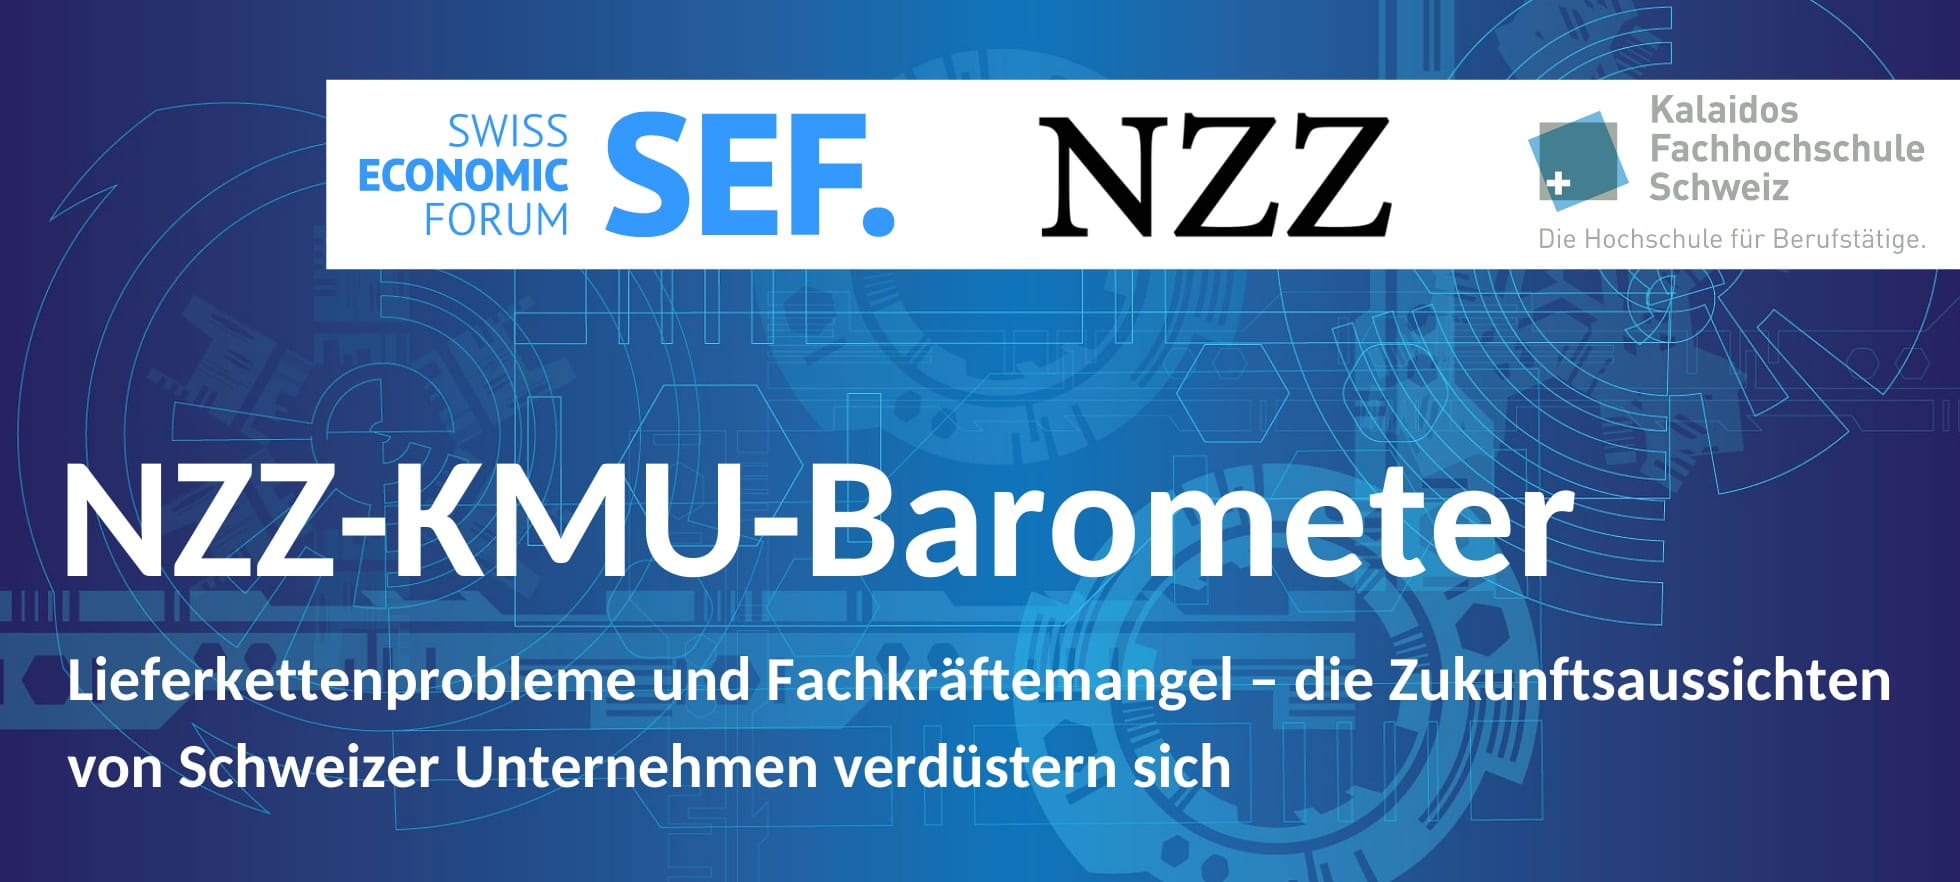 SEF NZZ KMU Barometer